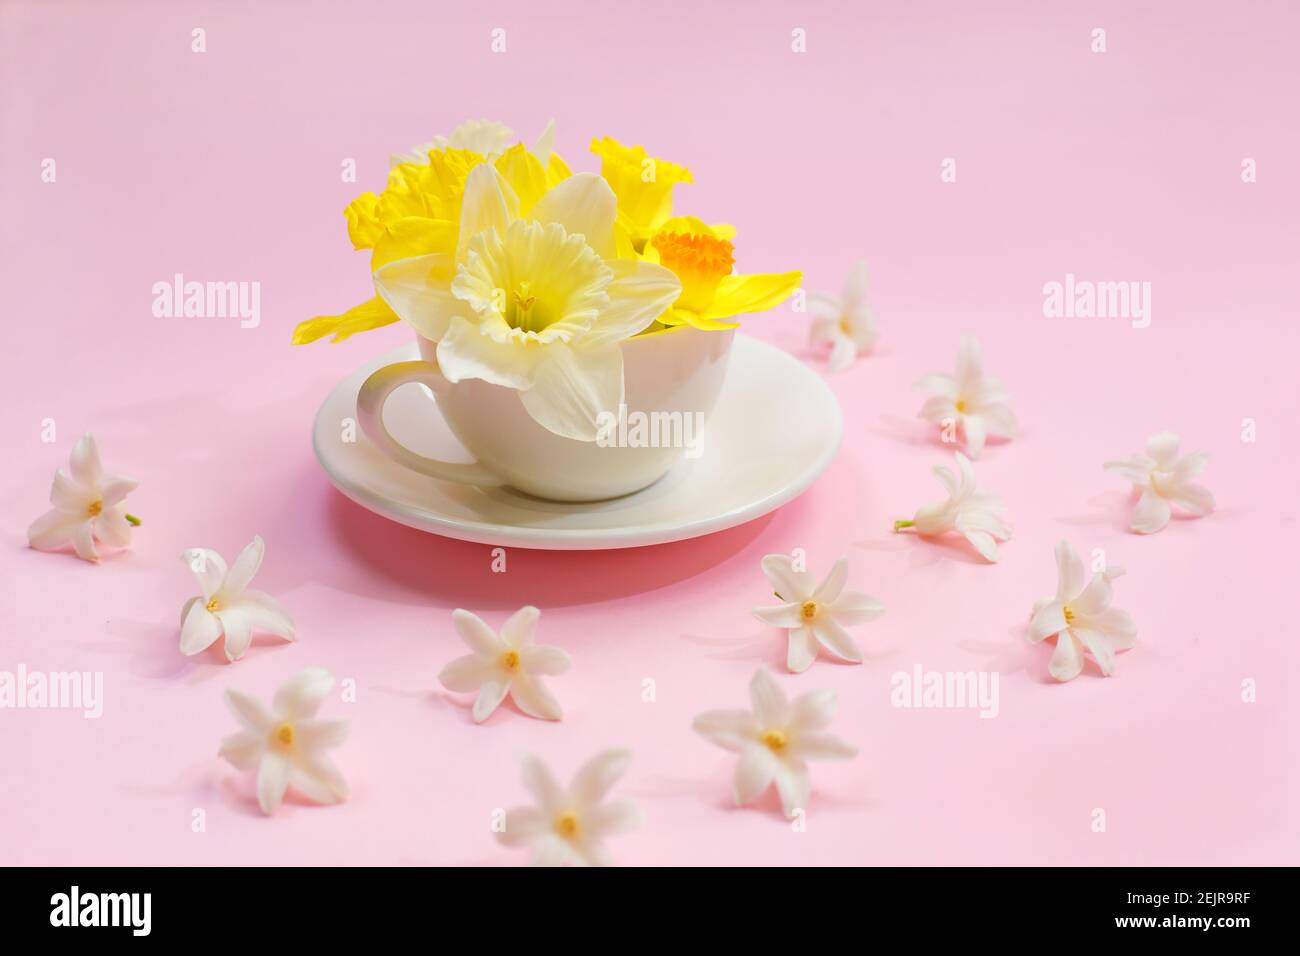 Beau Narcisse frais dans une tasse sur fond rose. Fleurs jaunes dans une  tasse. Spring floral background. Le minimalisme Photo Stock - Alamy